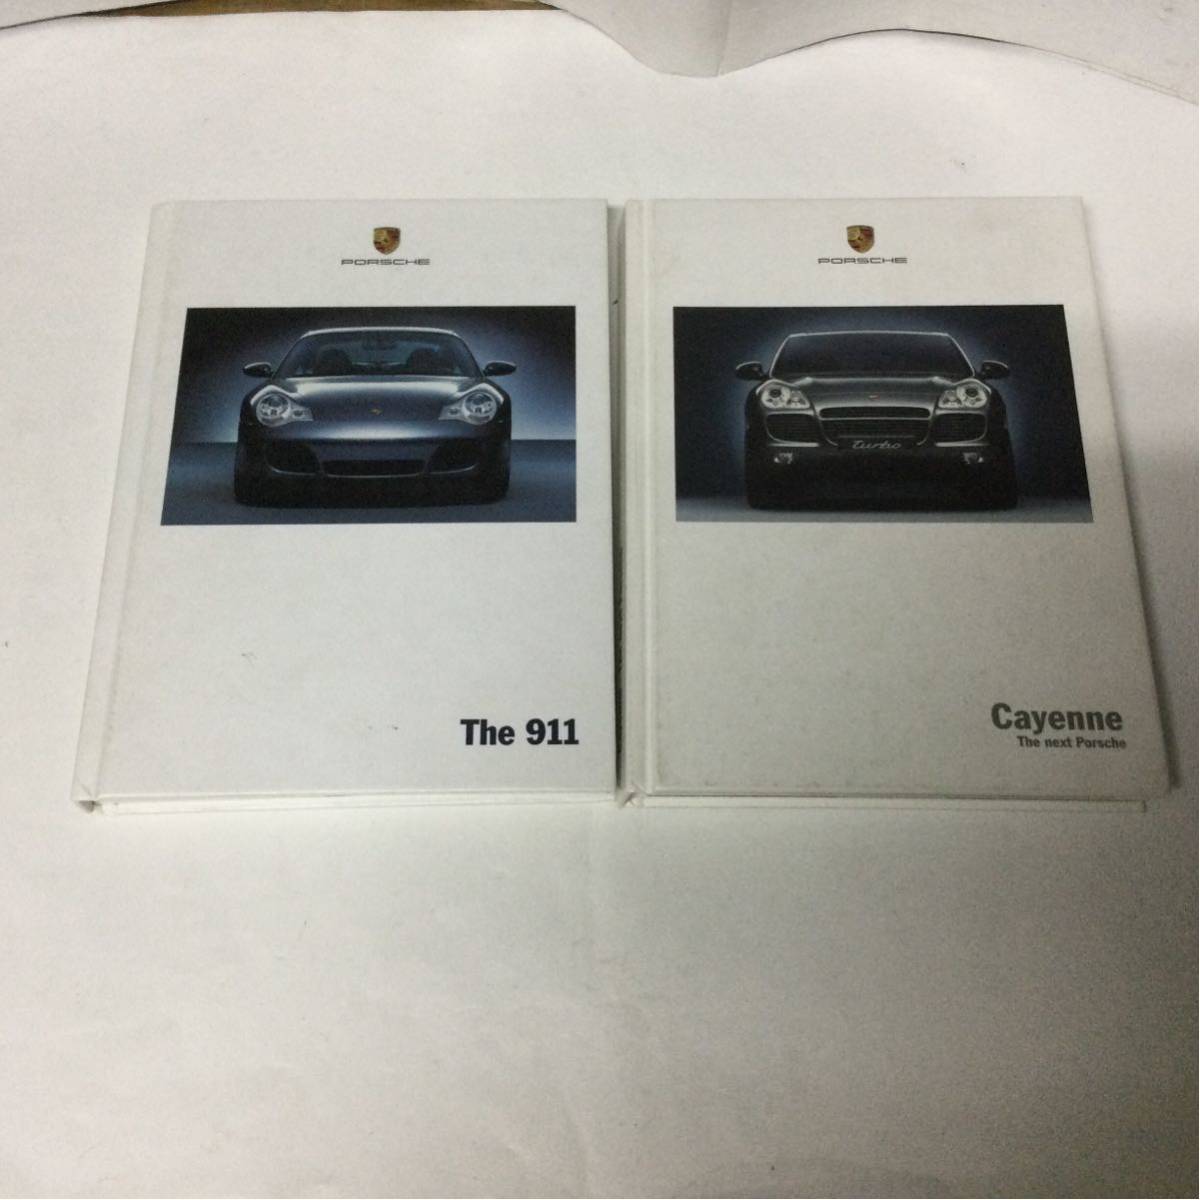 カタログ 価格表 2冊セット 911 Cayenne PORSCHE The ポルシェ 送料無料でお届けします ポルシェ